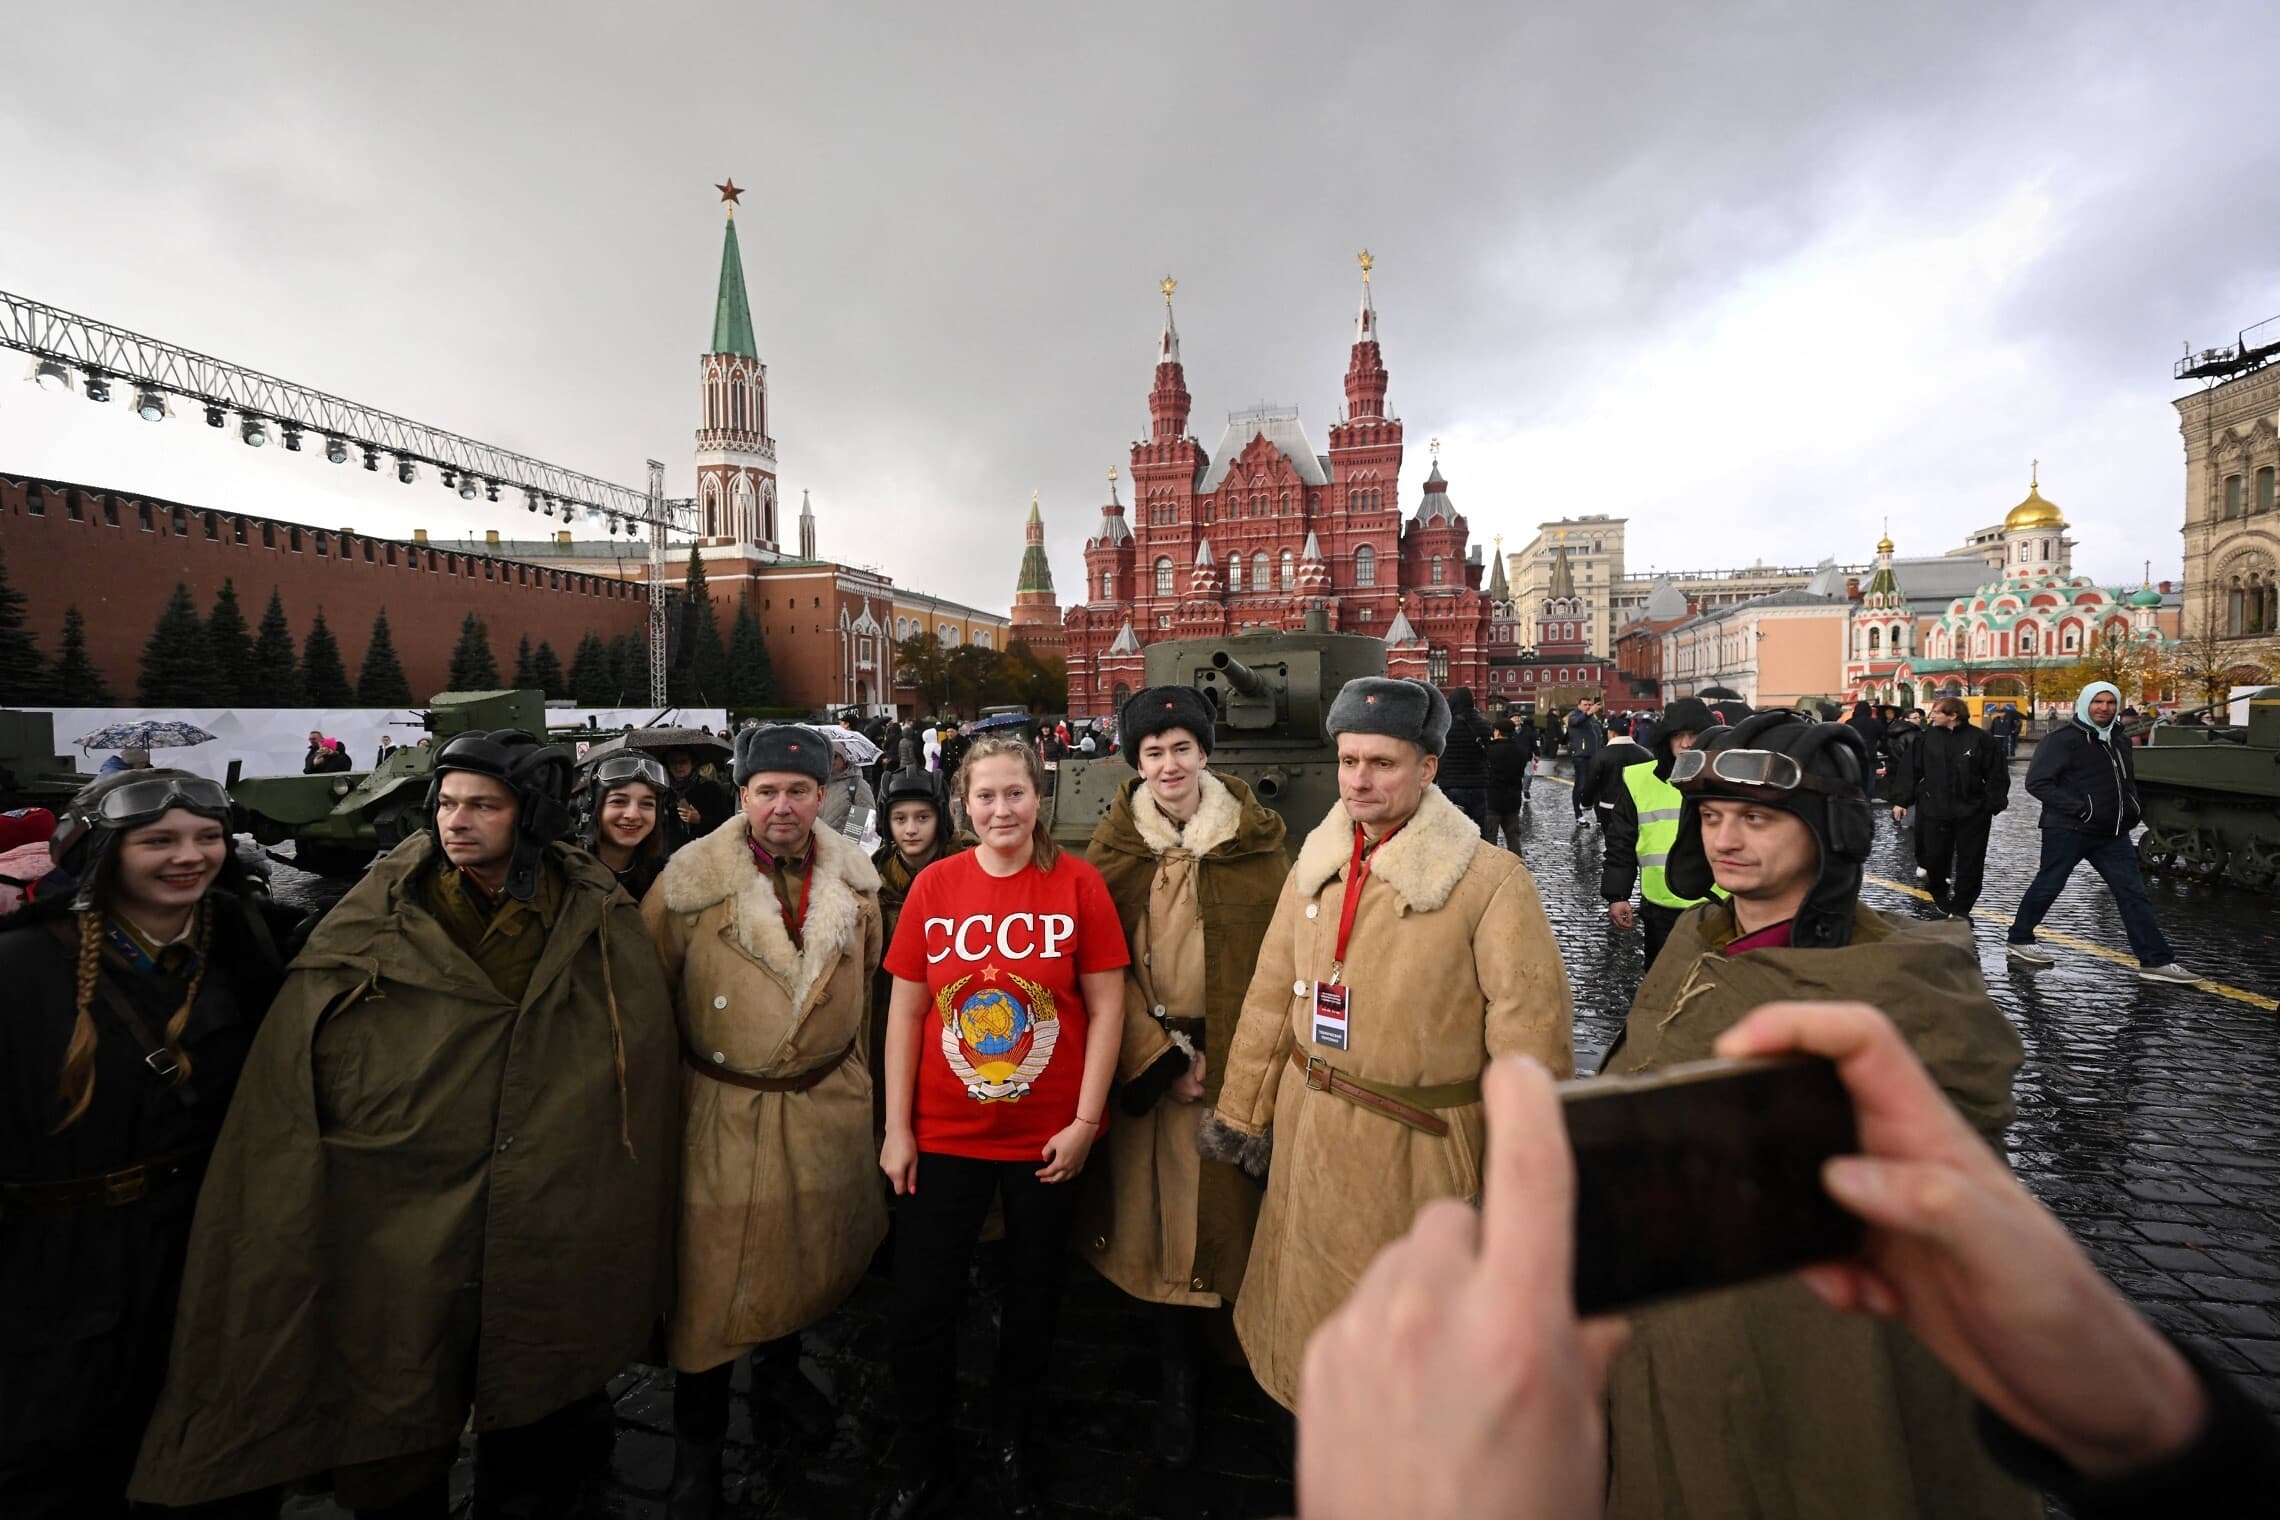 אישה רוסיה לבושה בחולצה עם לוגו של ברית המועצות מצולמת לצד חיילים מחופשים במדי מלחמת העולם השנייה בכיכר האדומה במוסקבה, 7 בנובמבר 2023 (צילום: Natalia KOLESNIKOVA / AFP)